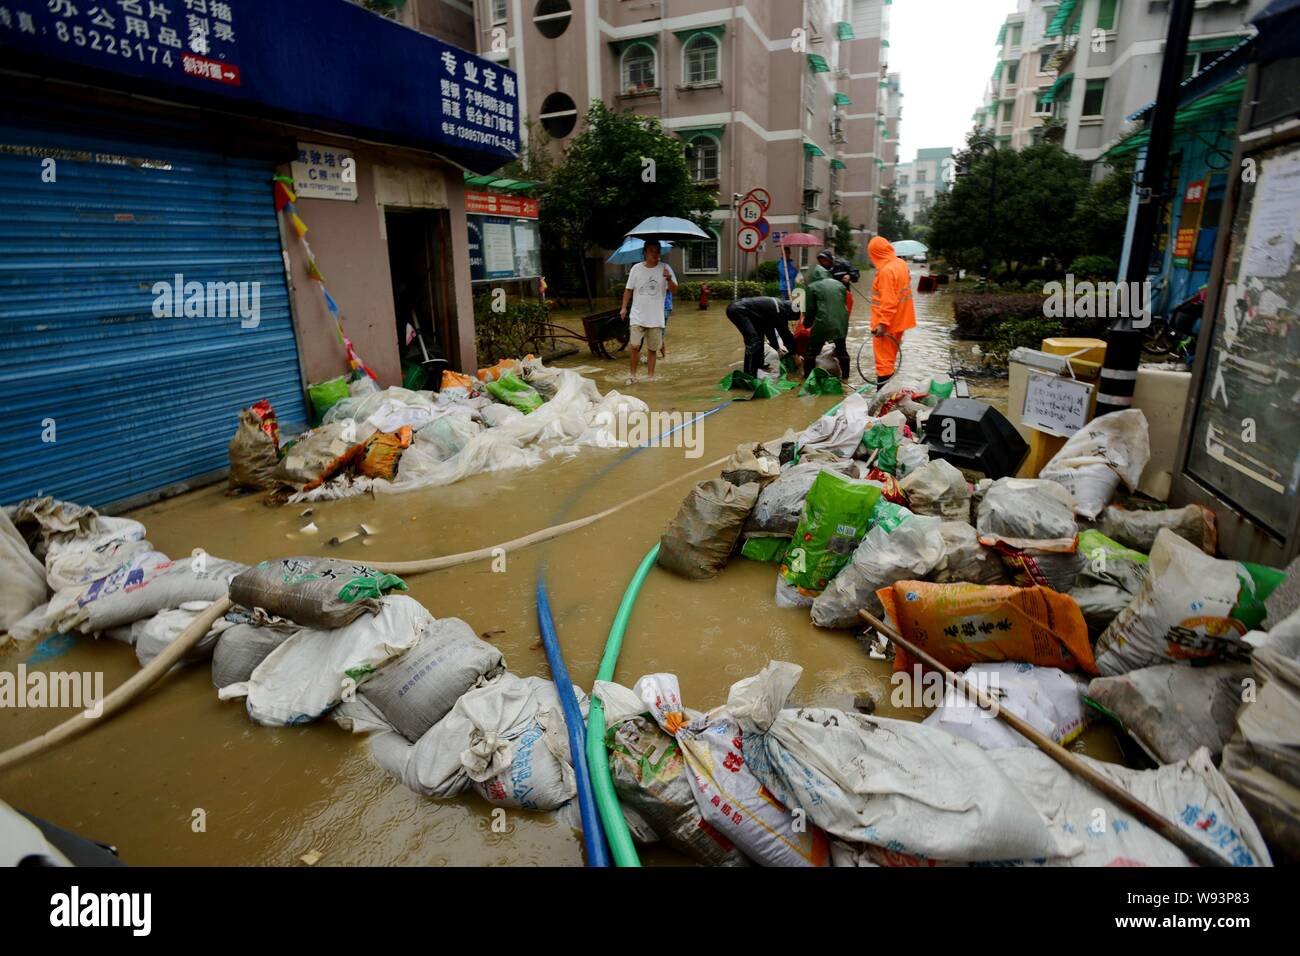 Chinesische Arbeiter clean up Durcheinander verursacht durch Taifun Fitow in Hangzhou, China Zhejiang provinz, 8. Oktober 2013. Ein massiver Taifun, forder hatte Stockfoto